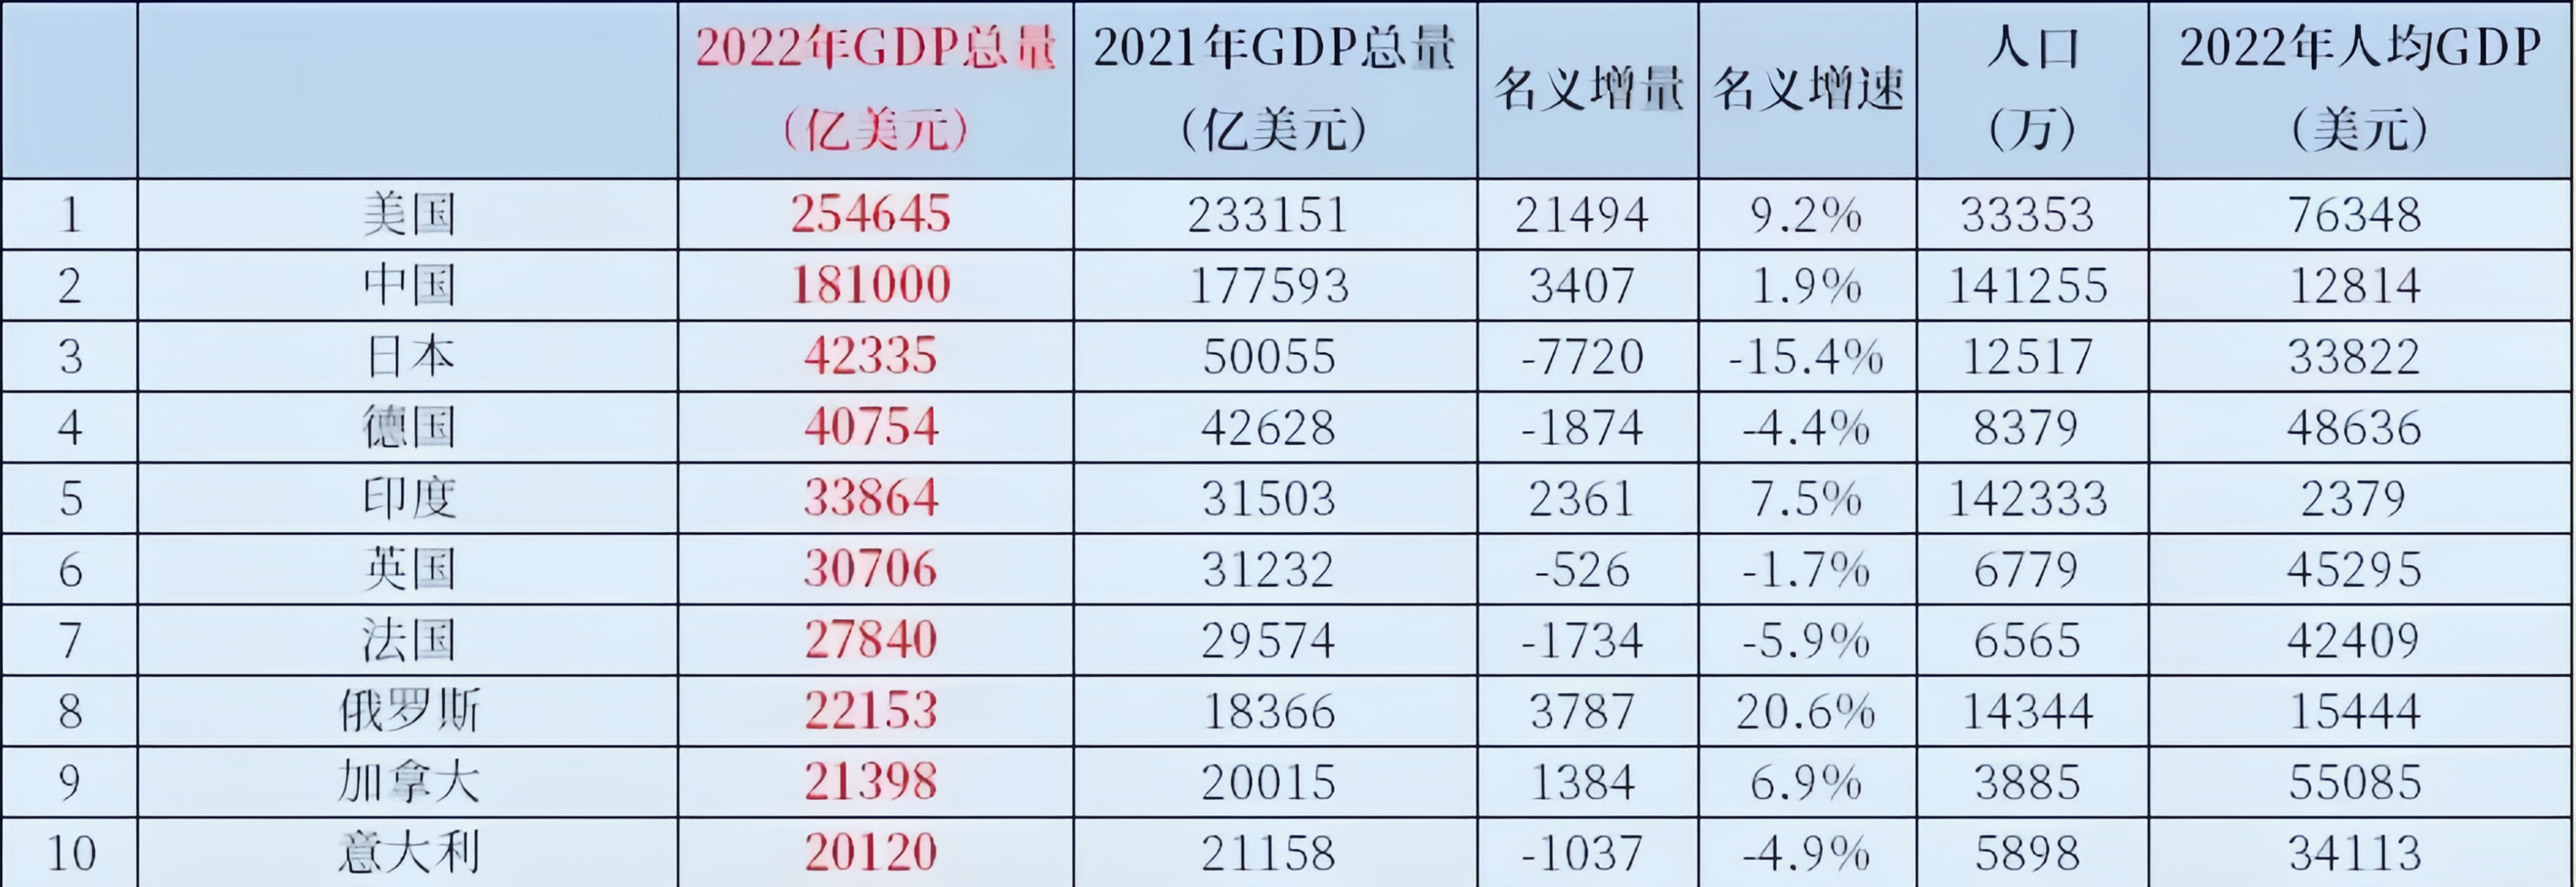 第一张图是2022年gdp世界排名前十的国家,第二张图是今年第一季度gdp